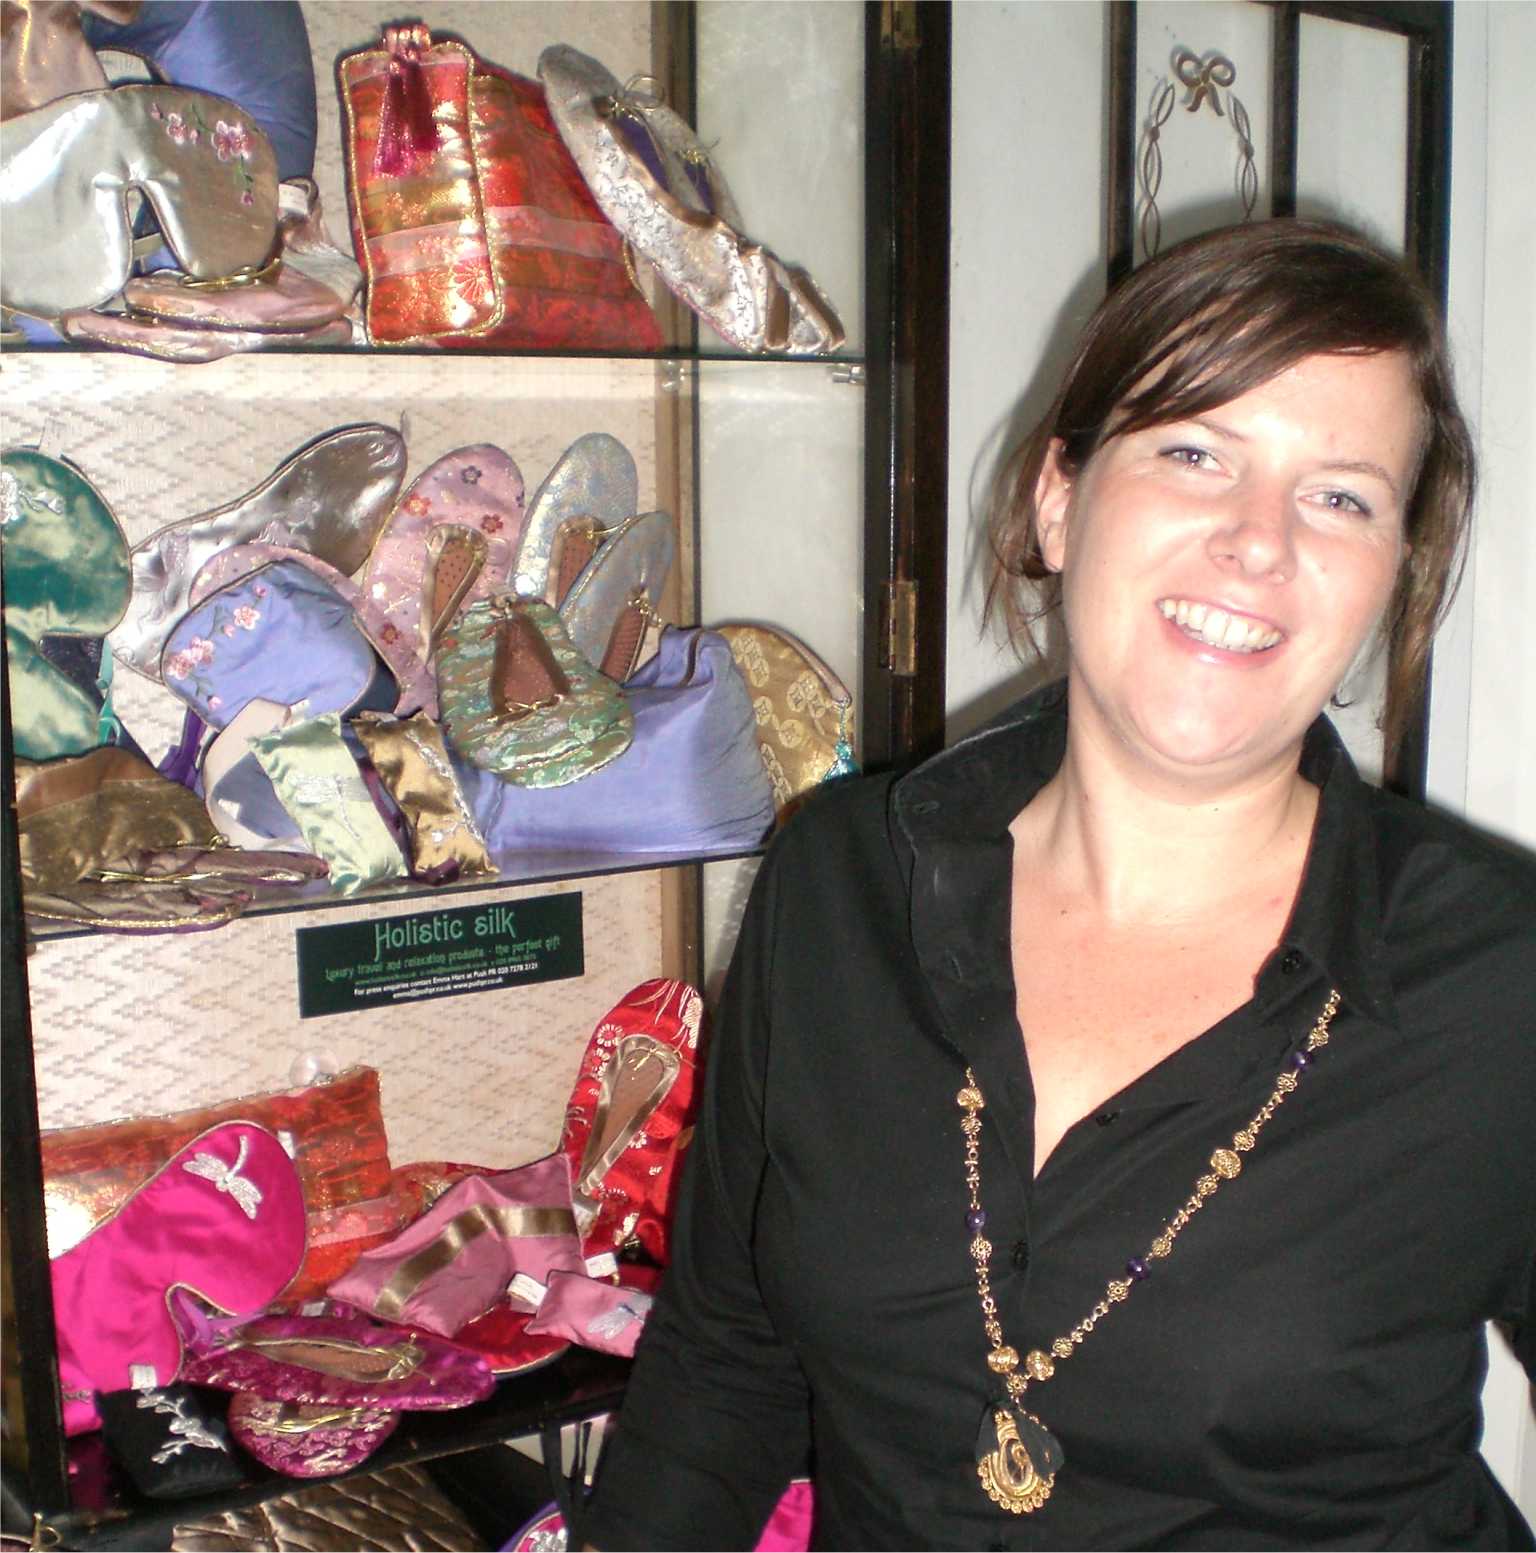 Holistic Silk Founder Joanna Weakley